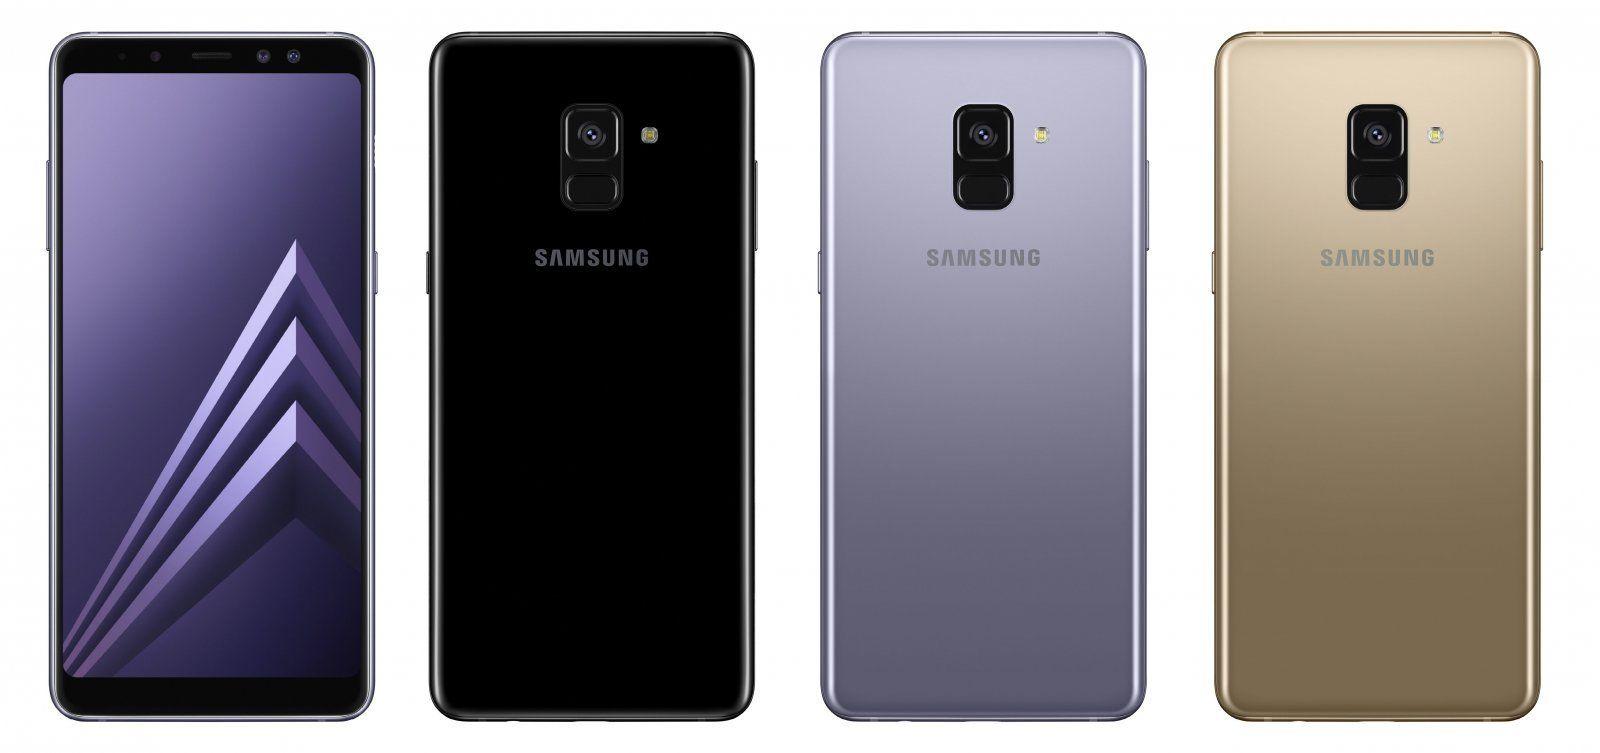 Galaxy a8 32. Samsung Galaxy a8 a530f. Samsung Galaxy a8 a8+. Samsung Galaxy a8 2018. Galaxy a8 2018 (SM-a530f).